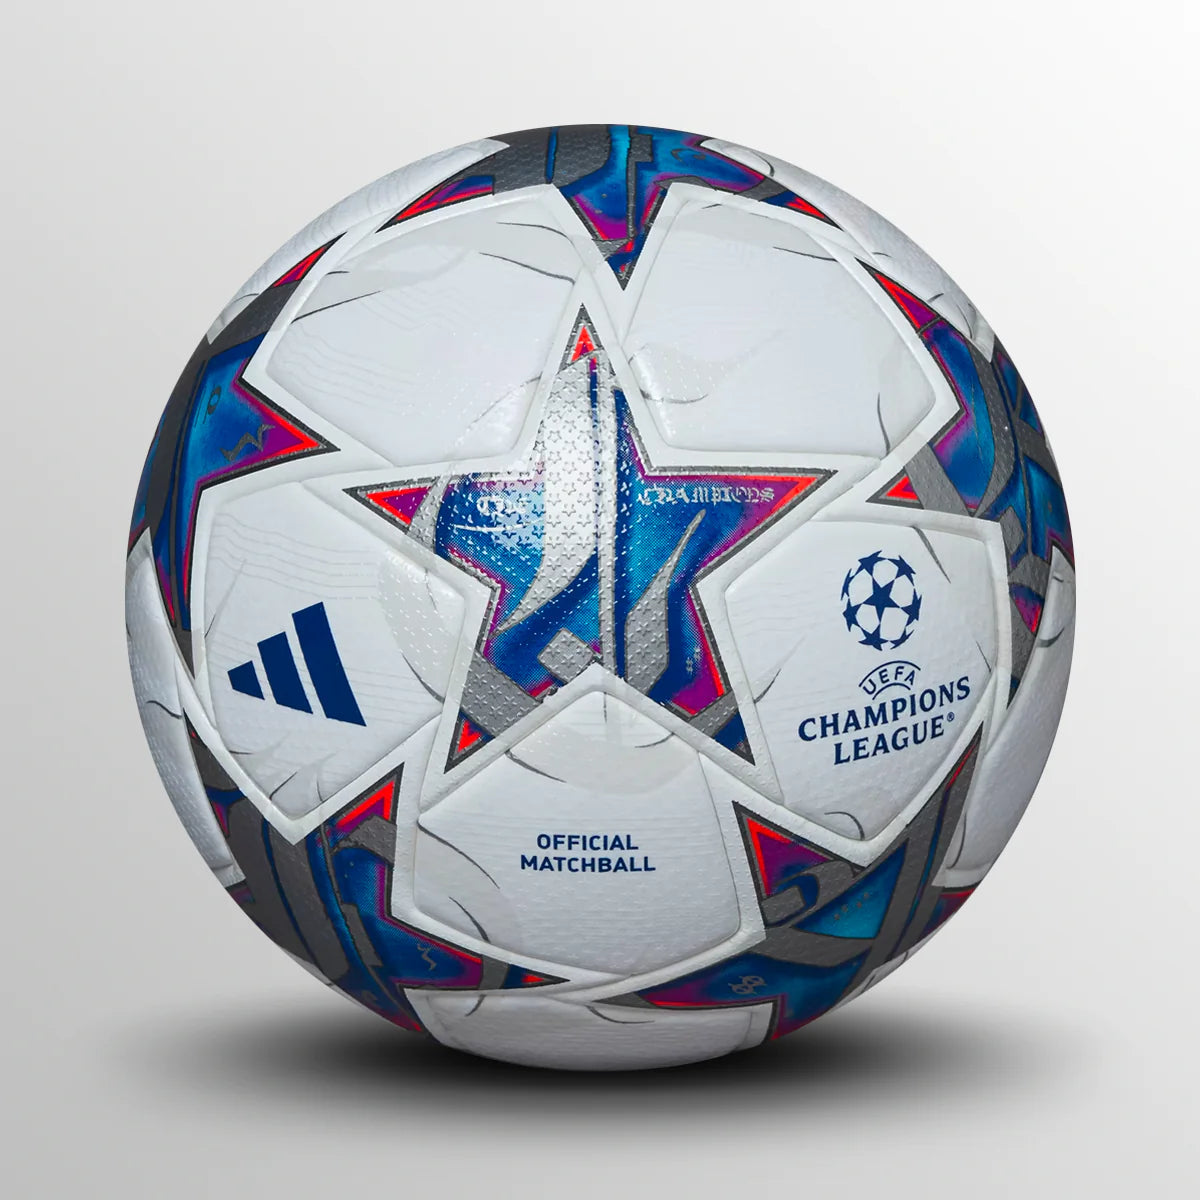 Champions league official match ball